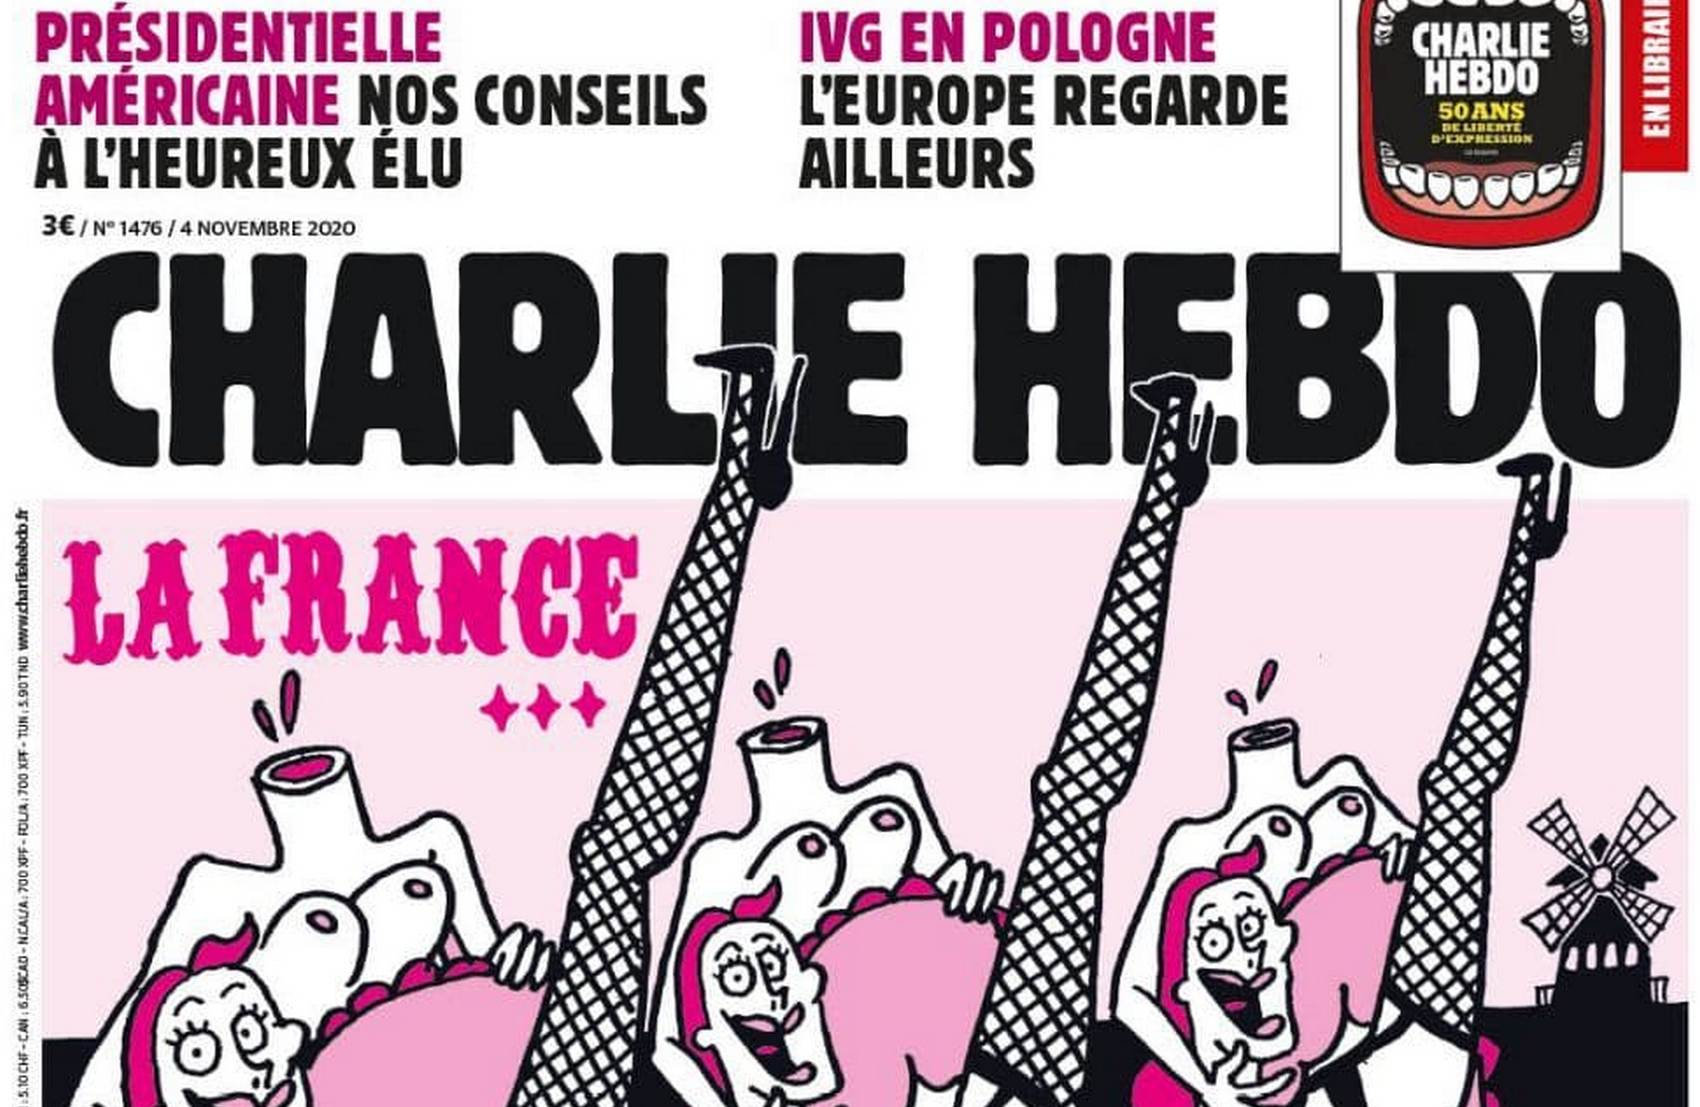 Charlie Hebdo посміявся над обезголовлюванням французів